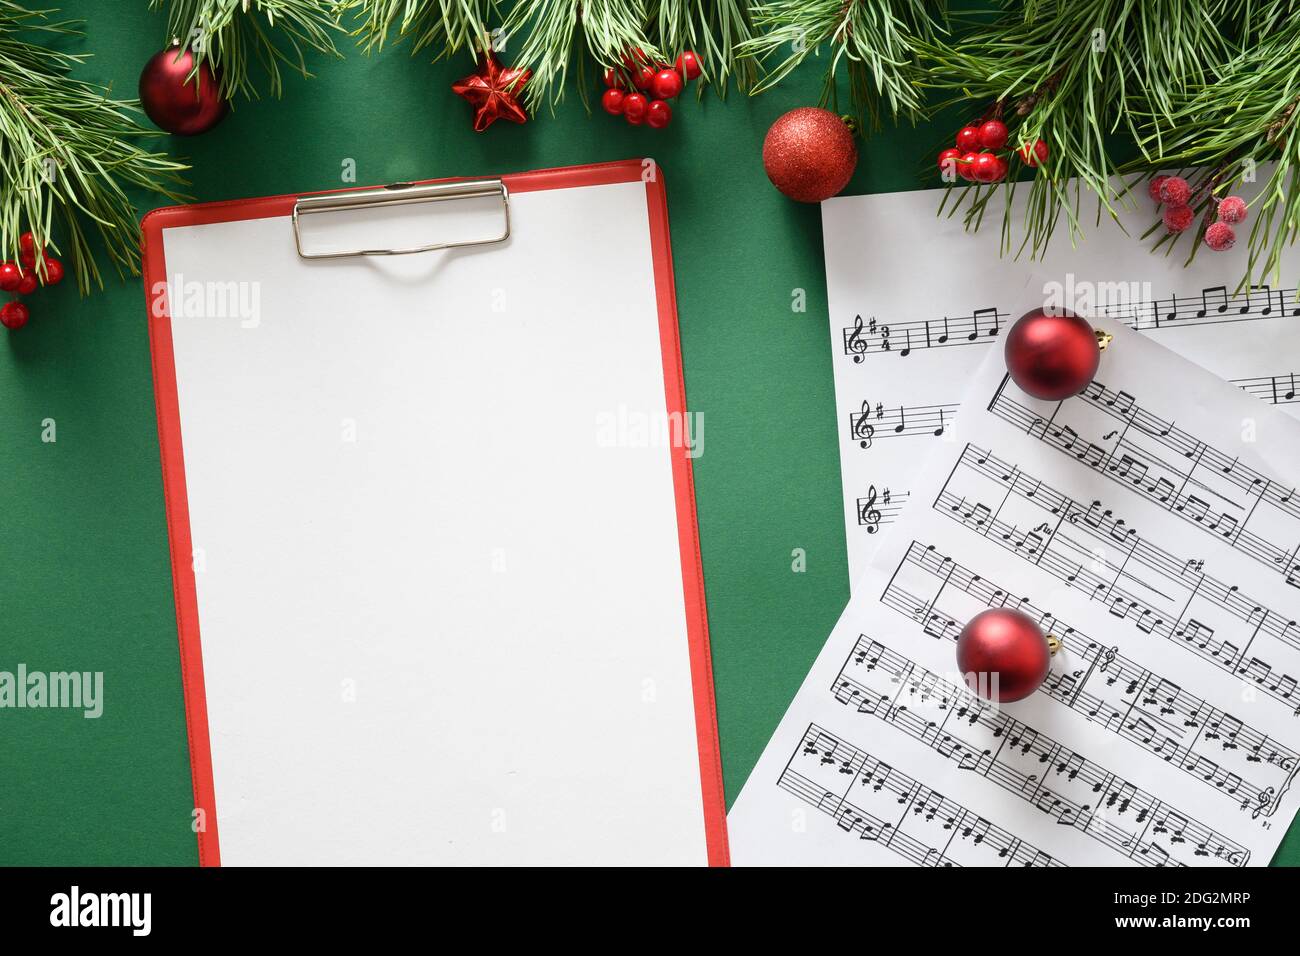 Musik leerer Rahmen für Weihnachtslieder und singt verzierte rote Kugeln auf grünem Hintergrund. Blick von oben. Leerzeichen für Text. Stockfoto